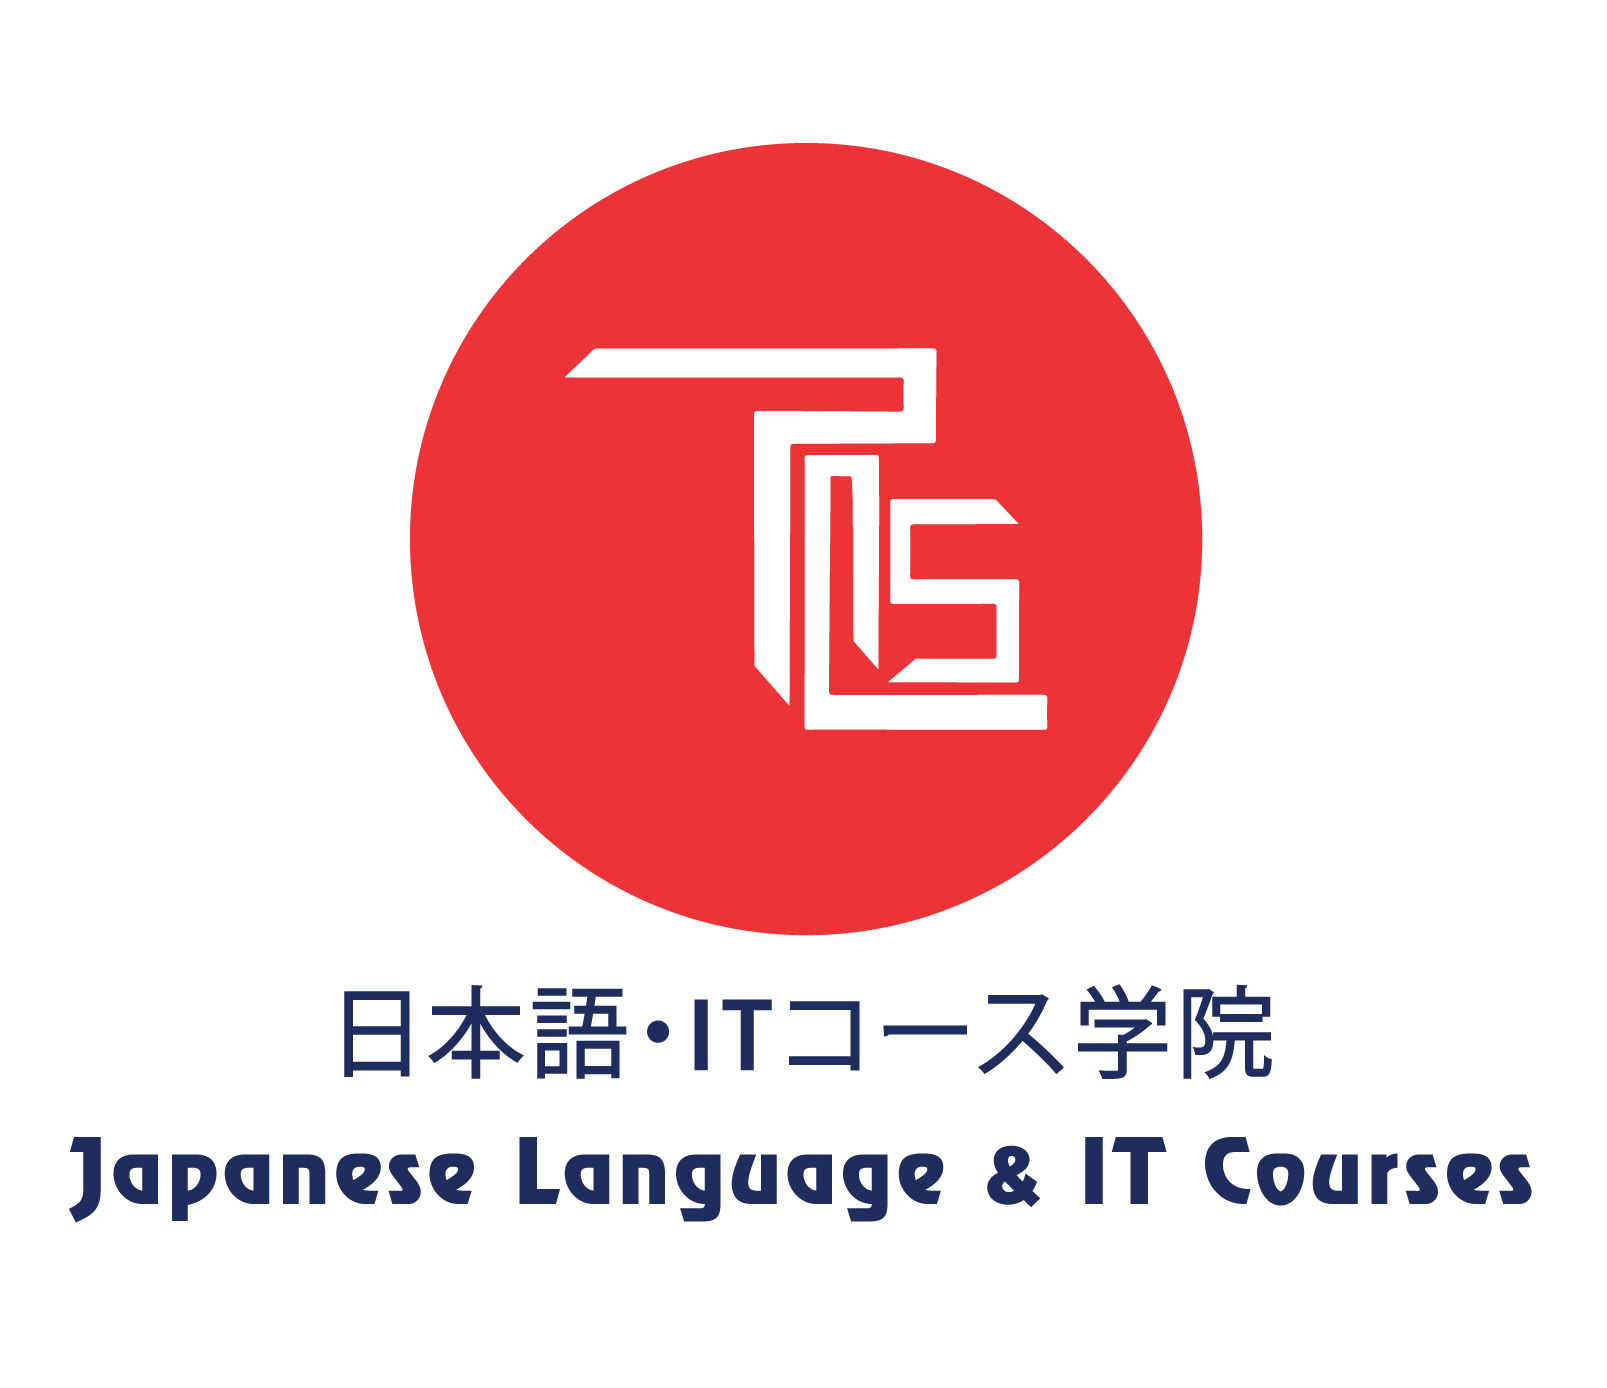 Best Japanese language institute